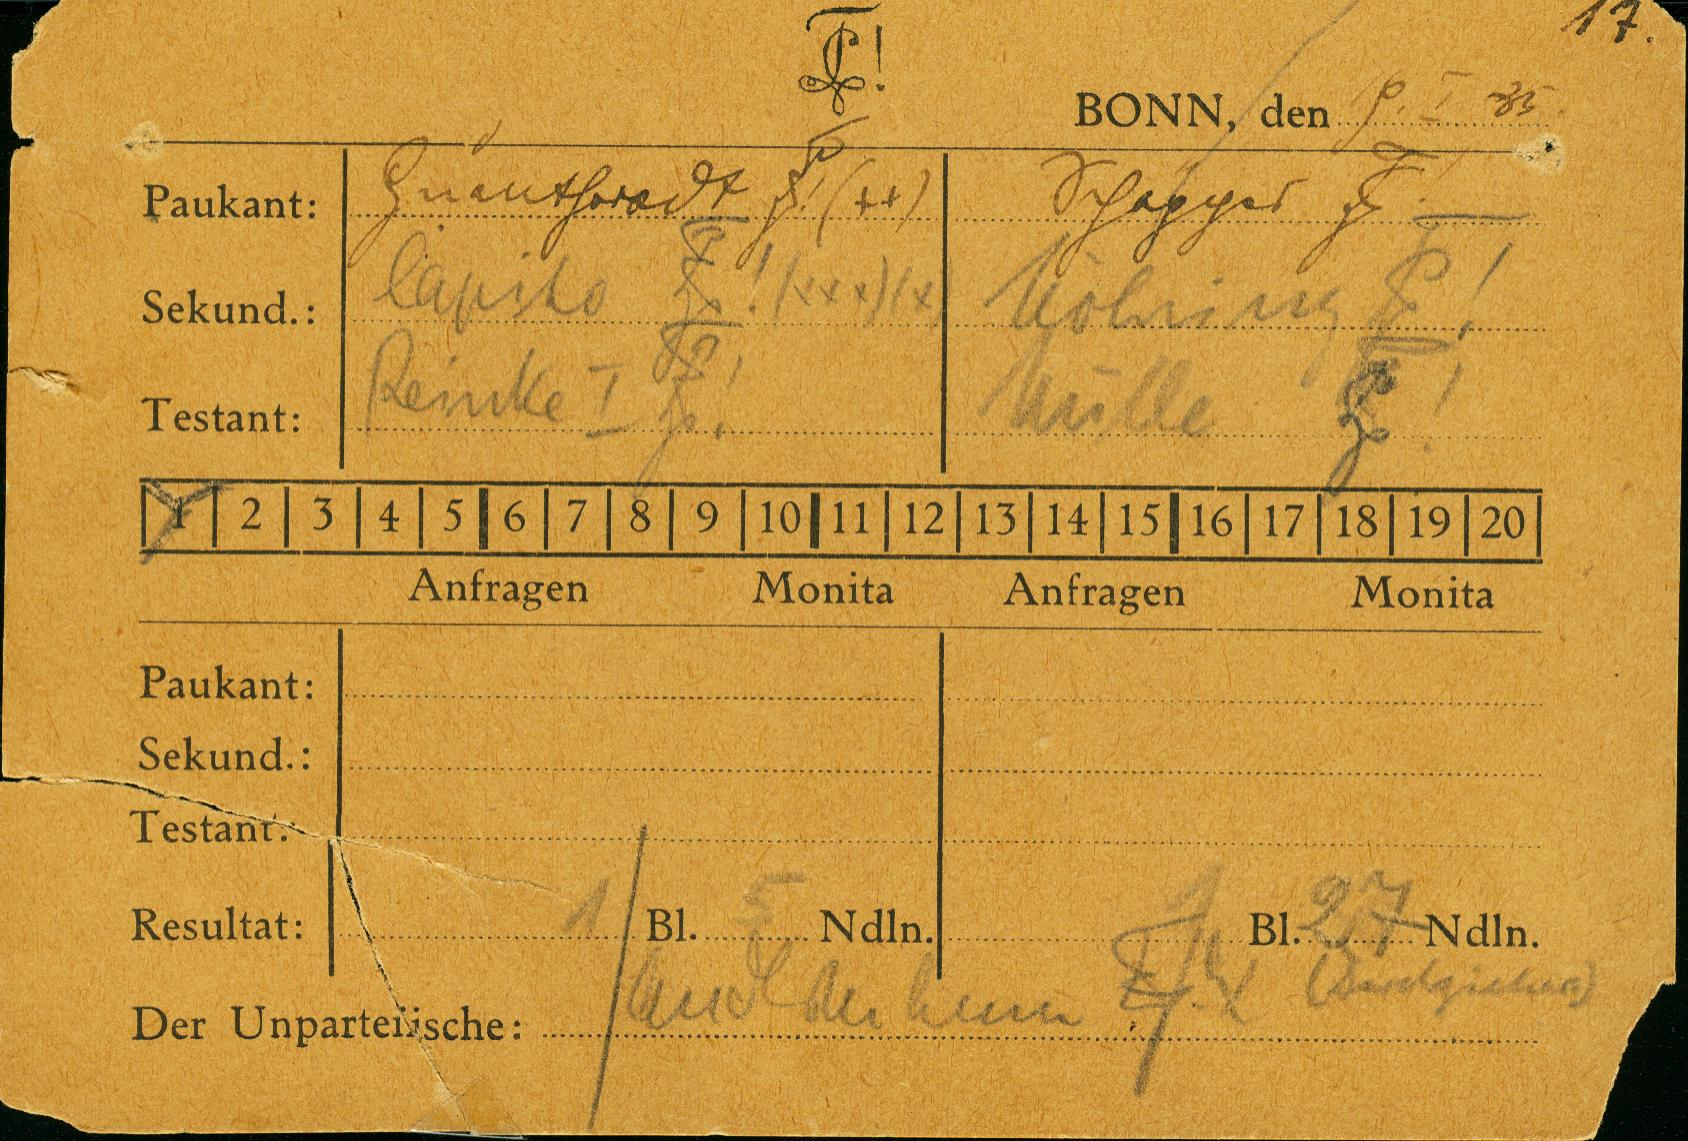 17. Partie gegen C! Teutonia Bonn, das nach 3 Gngen (1 Blutiger, 27 Nadeln) abfhrt.